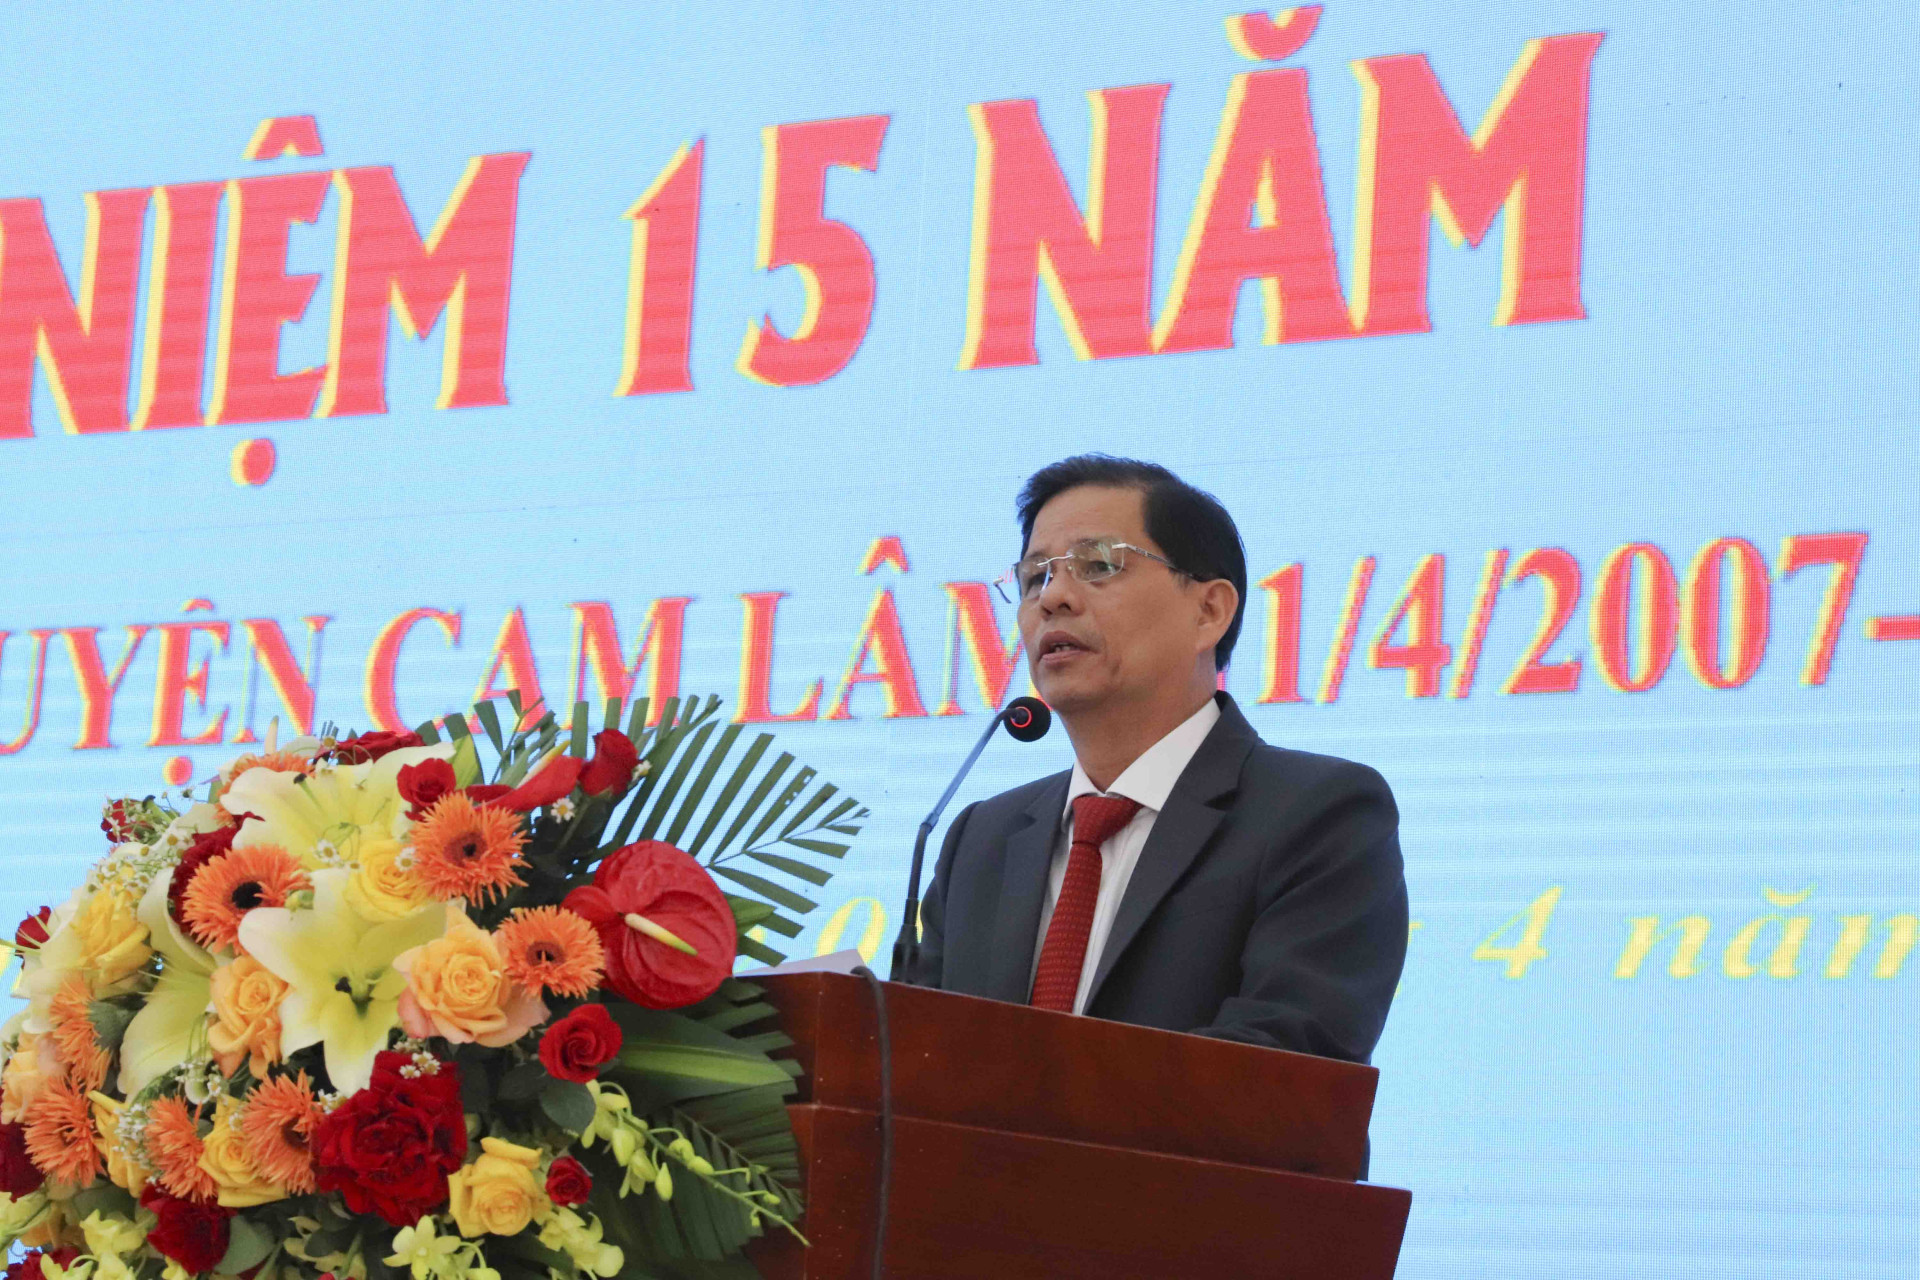 Ông Nguyễn Tấn Tuân phát biểu tại buổi lễ.